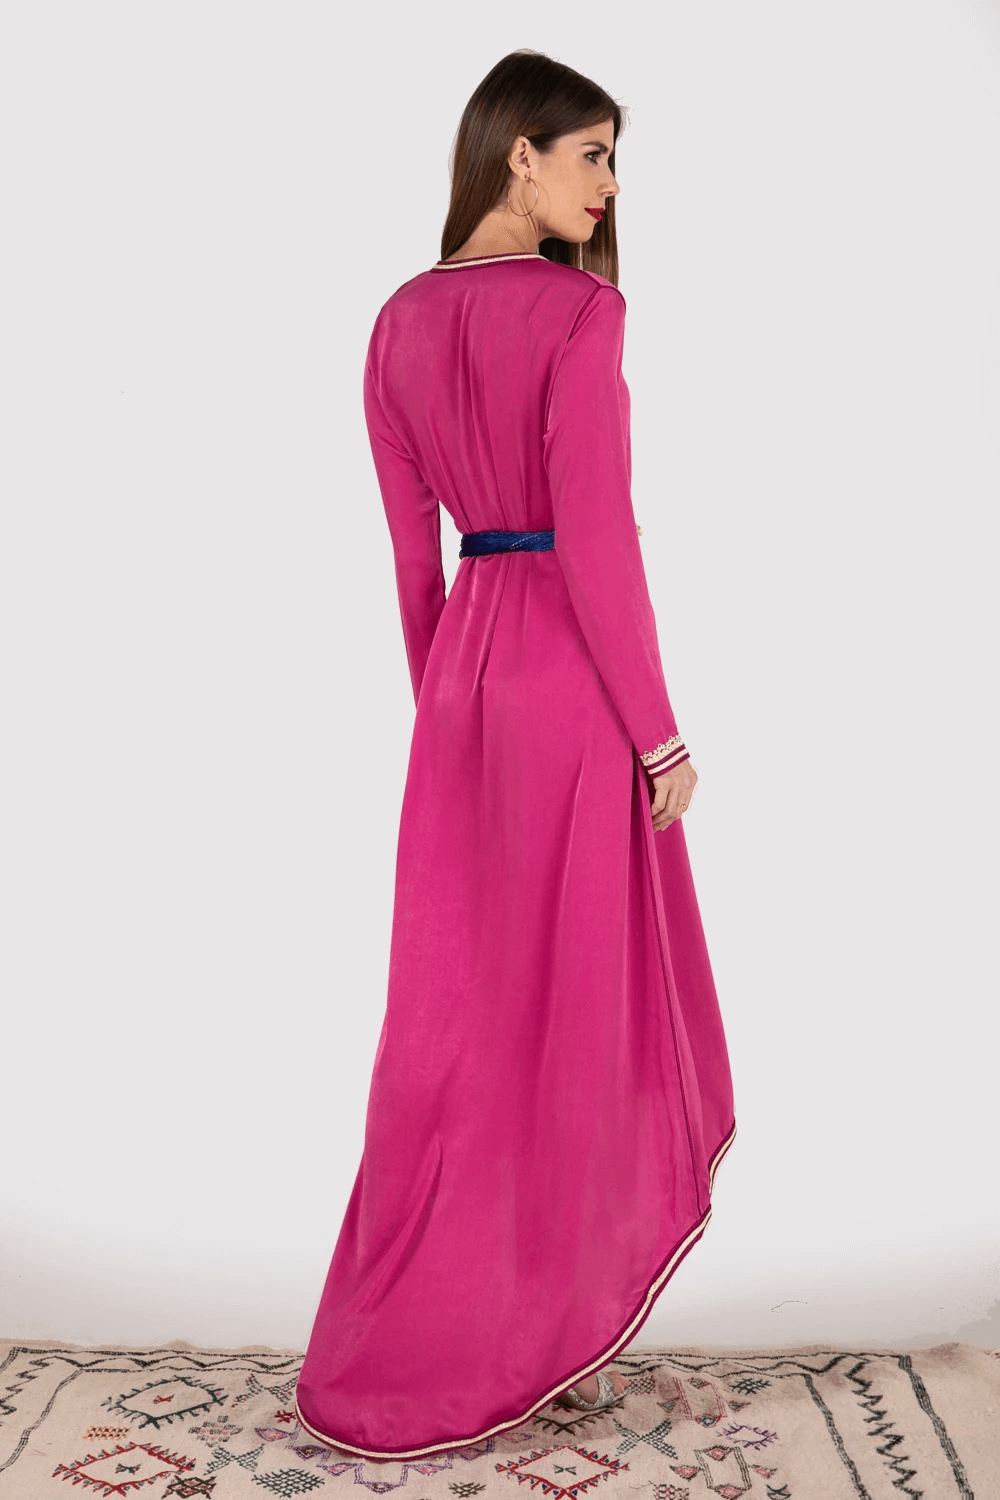 Lebssa Starlight Occasion Wear High-Low Hem Long Sleeve Dress with Belt in Fuschia